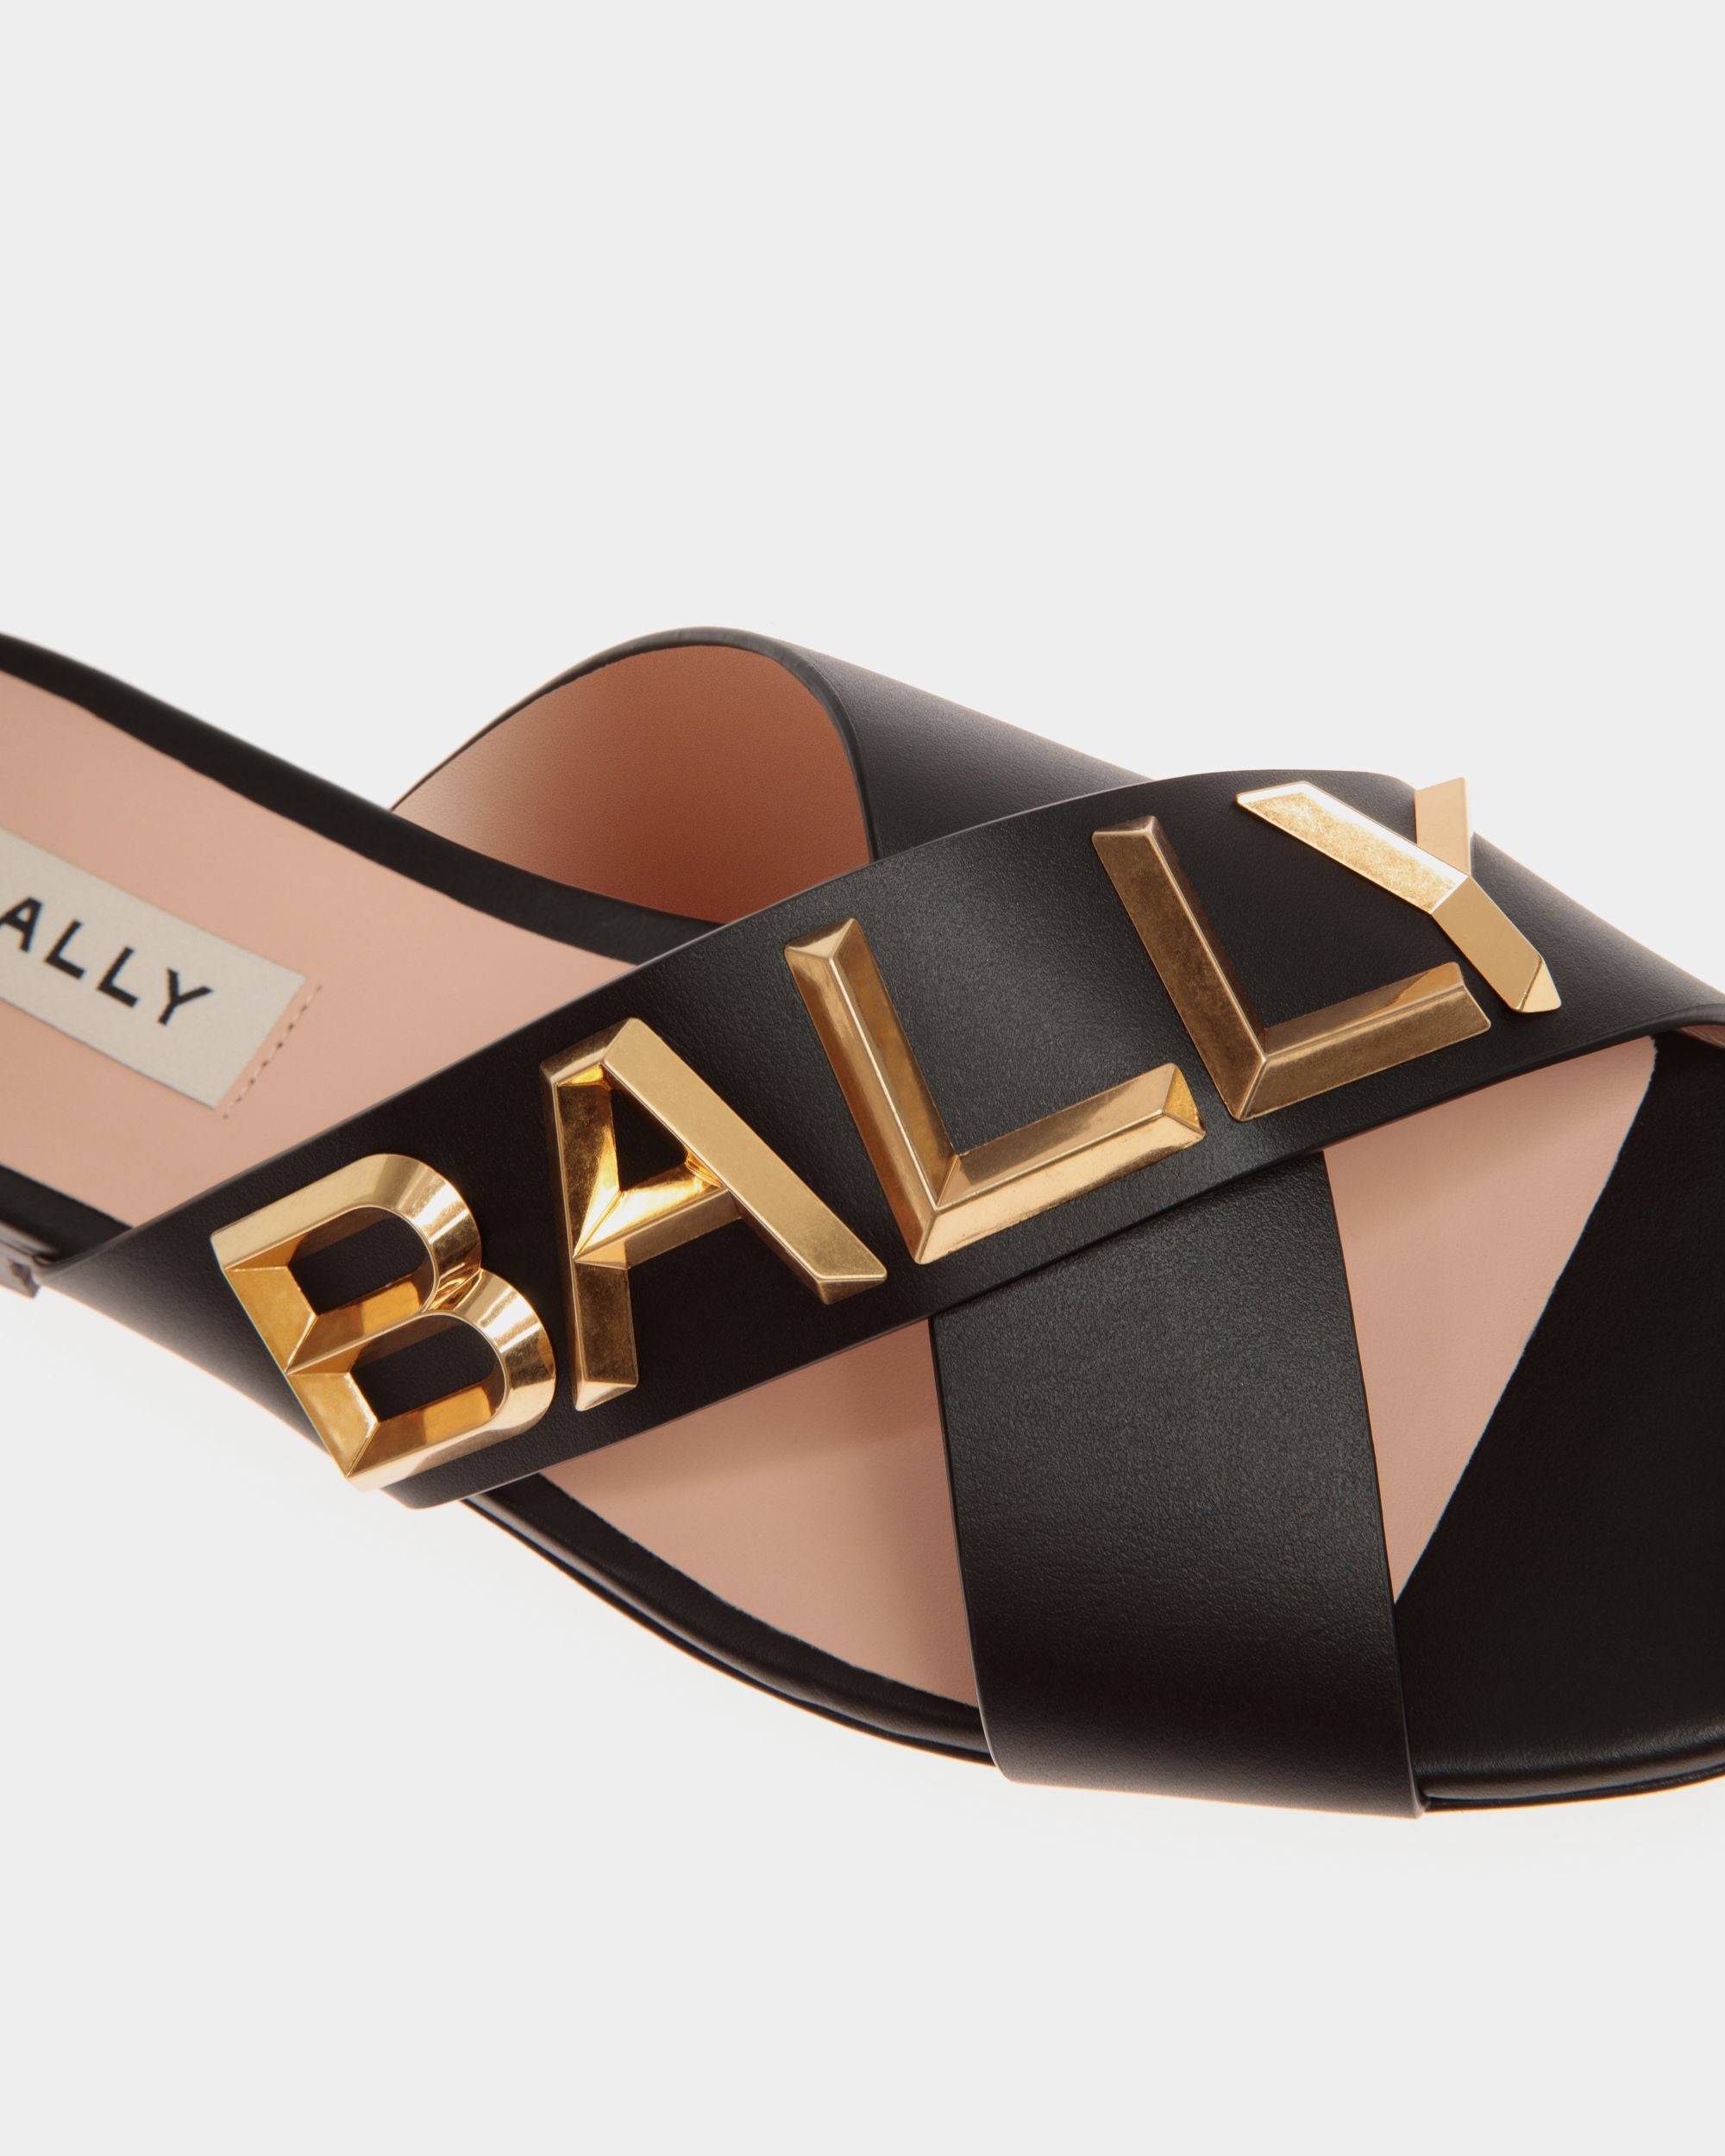 Bally Spell | Flache Pantolette für Damen aus Leder in Schwarz | Bally | Still Life Detail